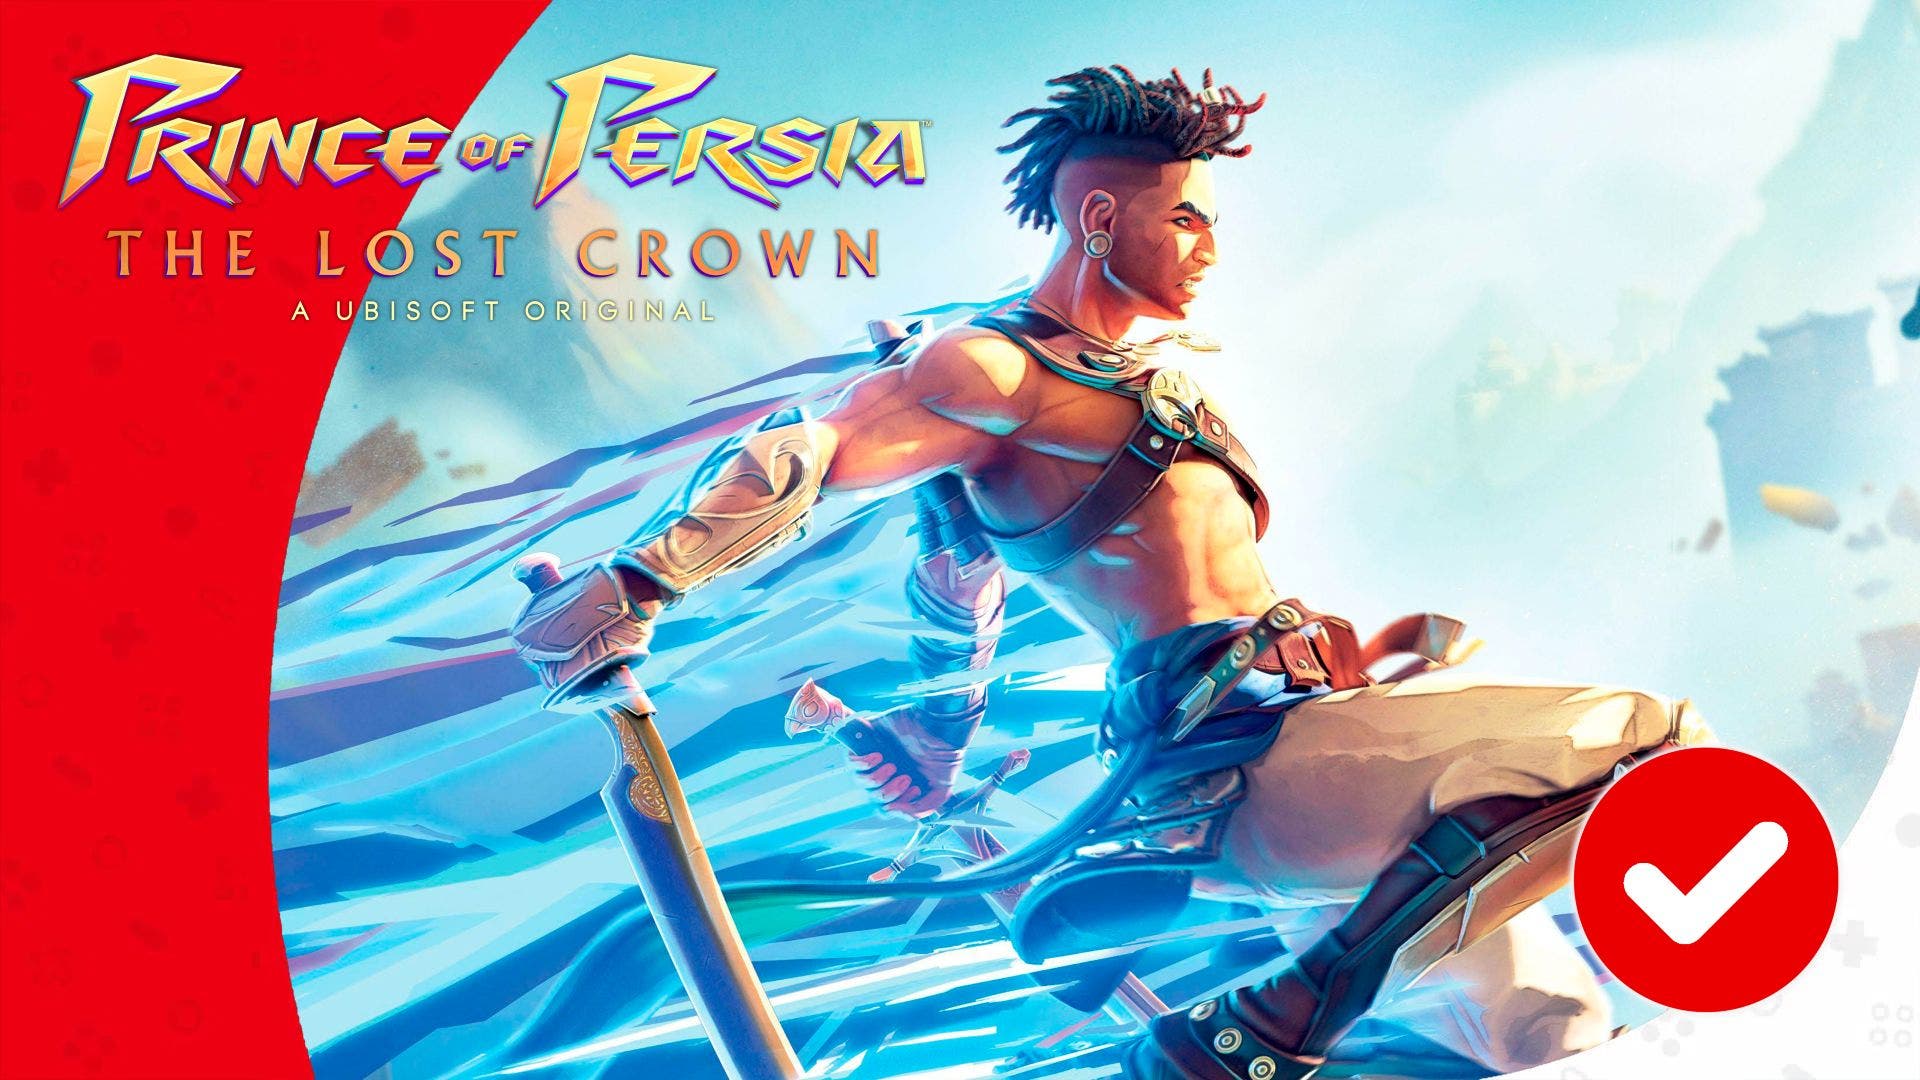 Análisis de Prince of Persia: The Lost Crown, el mejor juego de